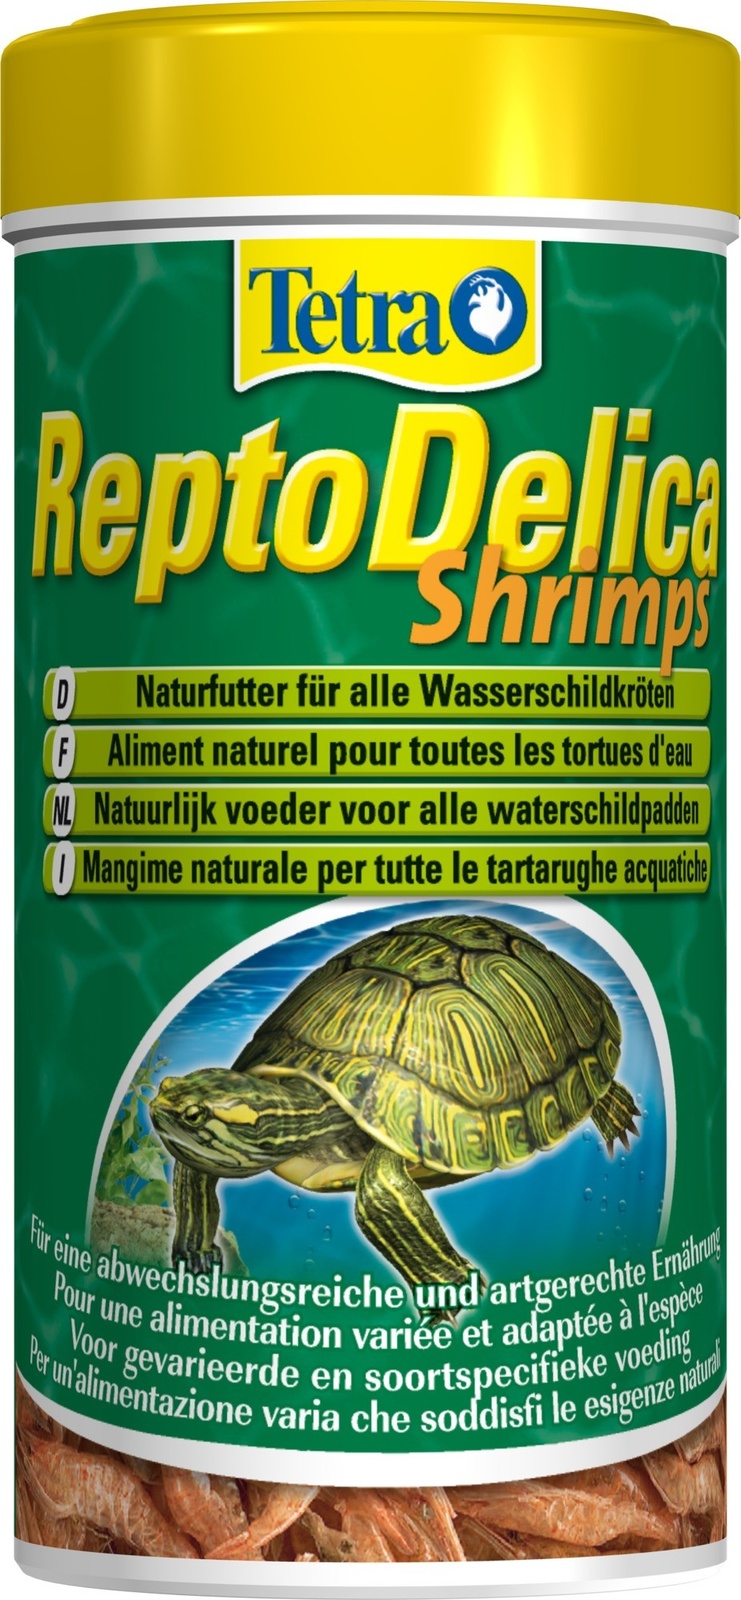 tetra корма tetra корма натуральное лакомство для водных черепах кузнечики 28 г Tetra (корма) Tetra (корма) корм для водных черепах. креветки ReptoDelica Shrimps (20 г)